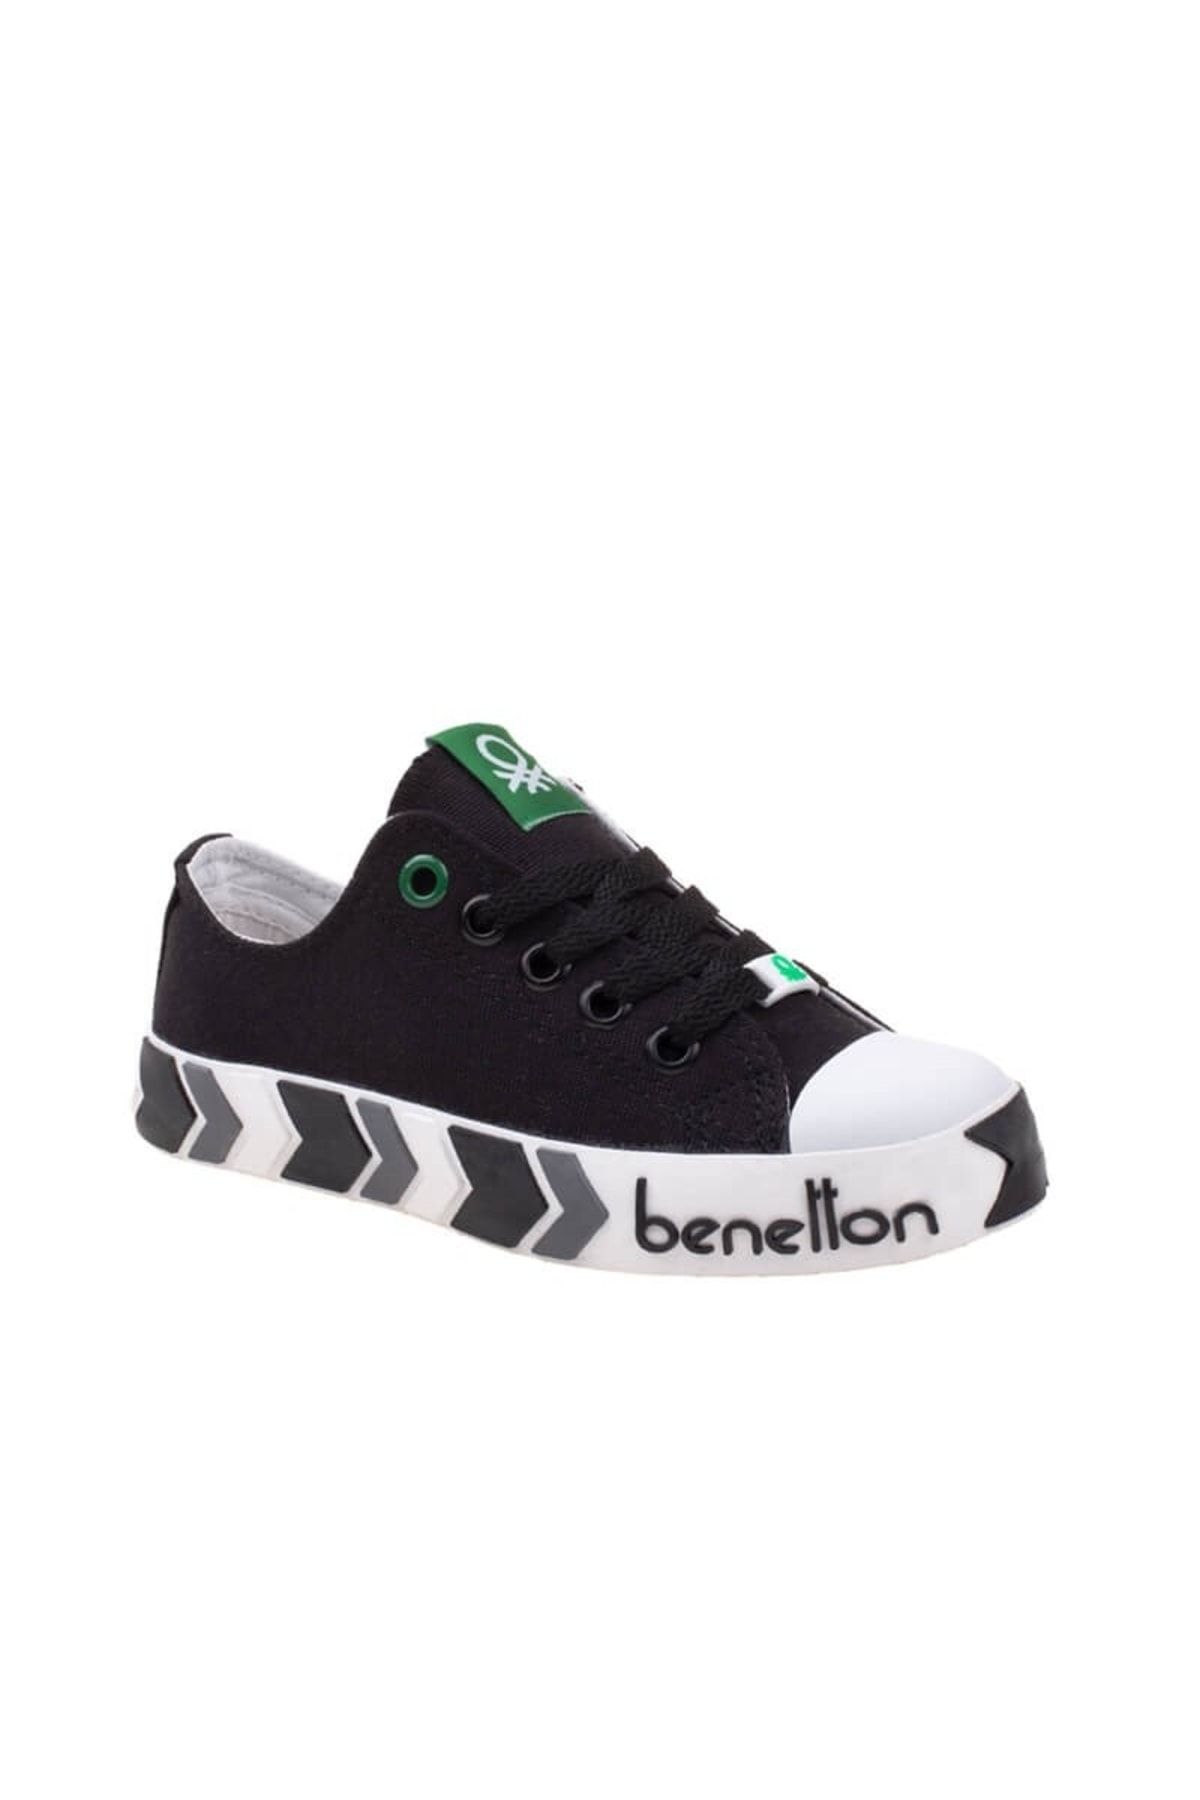 Benetton Siyah Çocuk Unisex Kısa Spor Ayakkabı Bn-30633